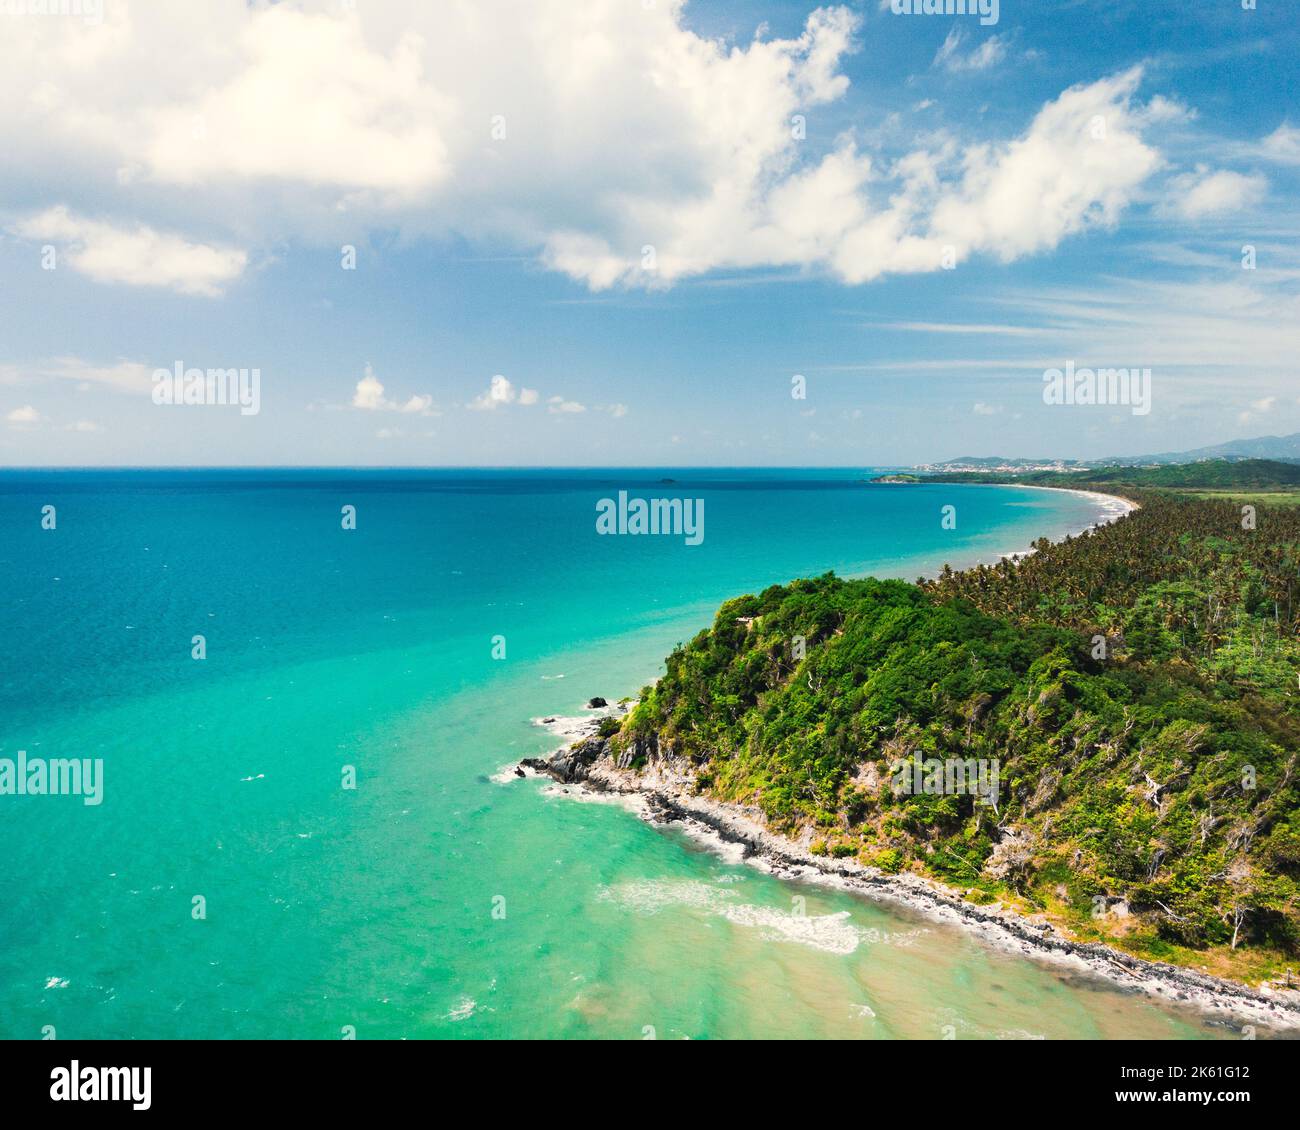 bellissima foto di droni in spiaggia con oceani blu puri da porto rico a humacao Foto Stock